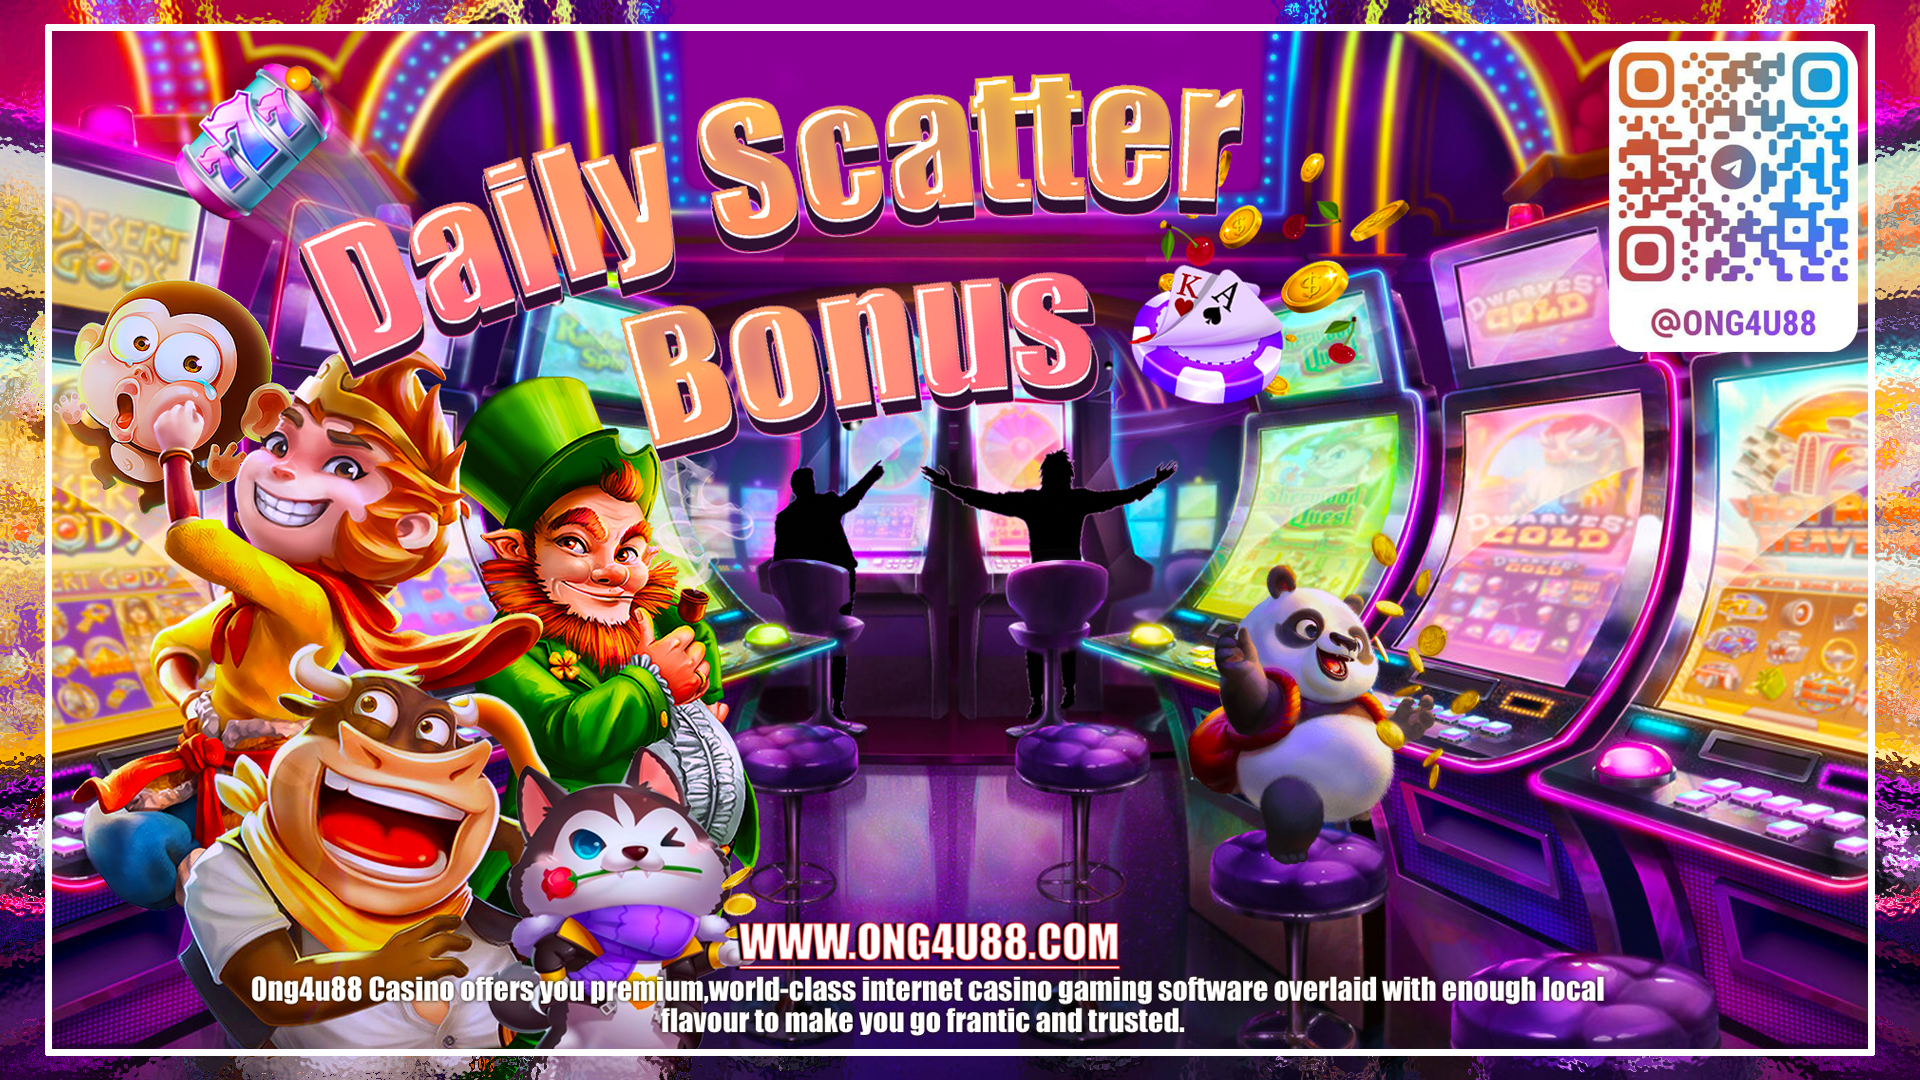 daily scatter bonus 